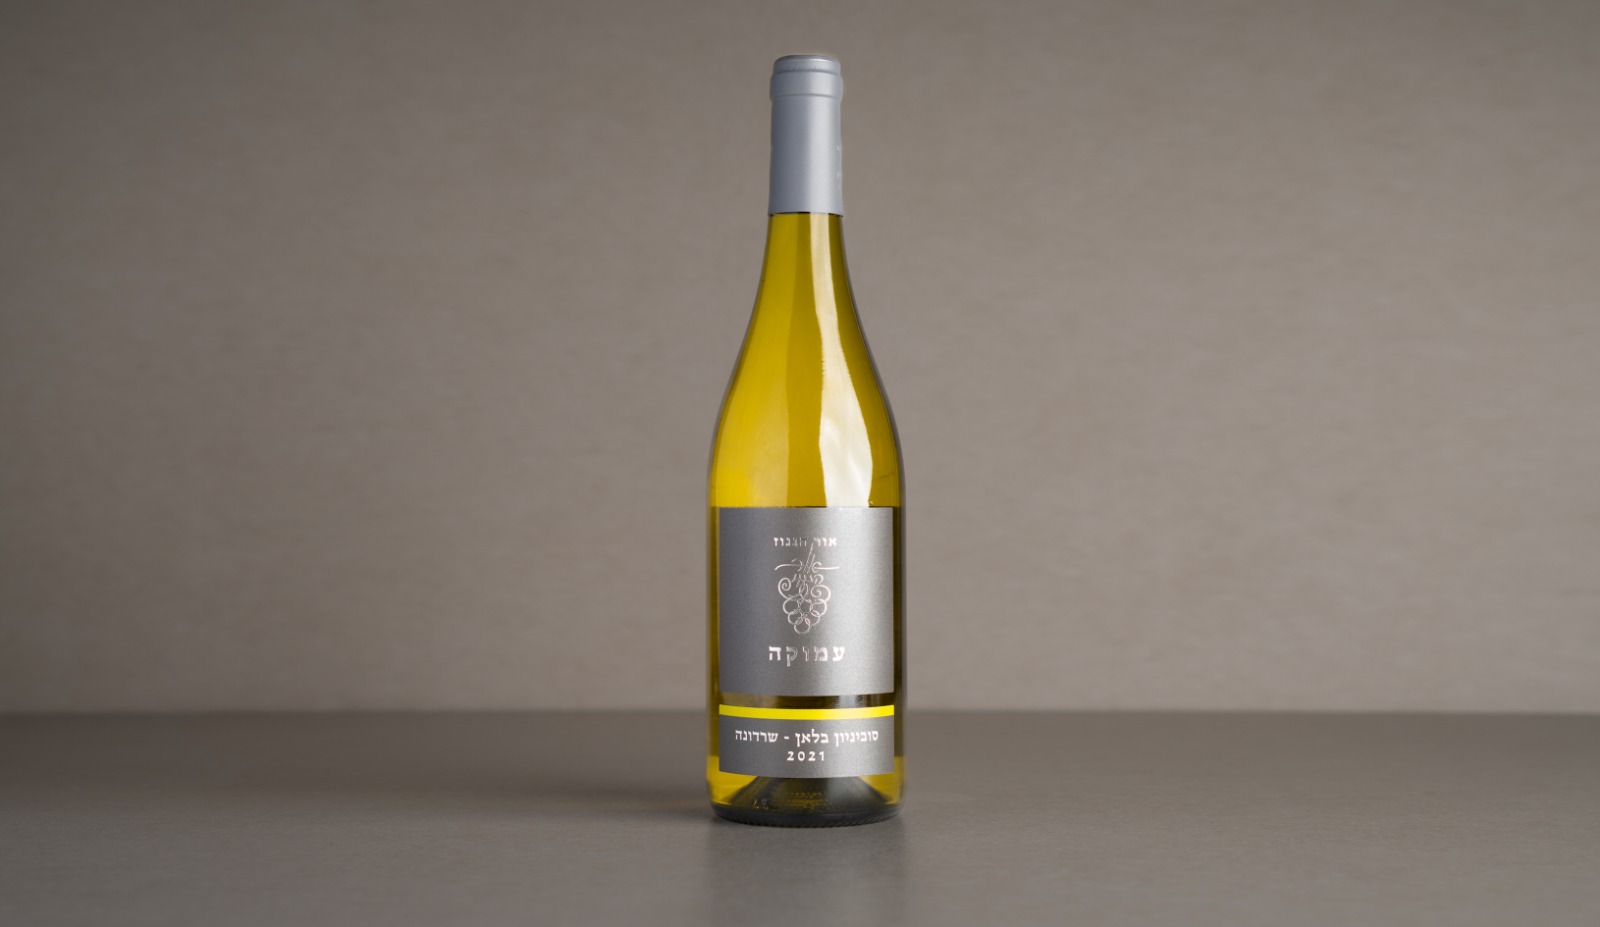 יין לבן יבש "אור הגנוז" עמוקה סוביניון בלאן ושרדונה 2021